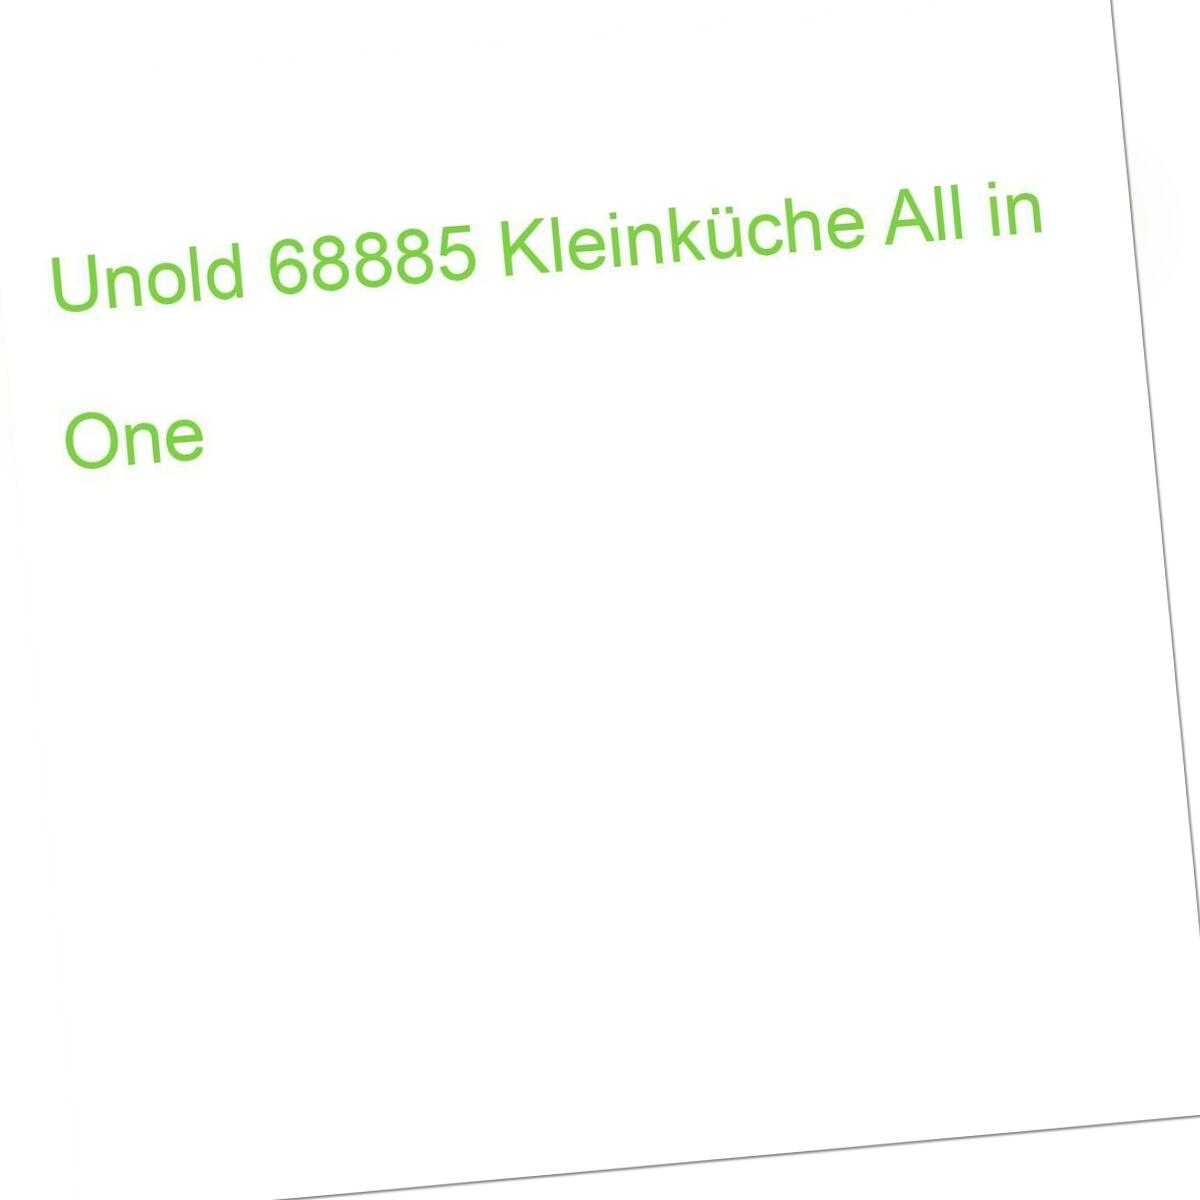 UNOLD 68885 Kleinküche All in One (4011689688850)